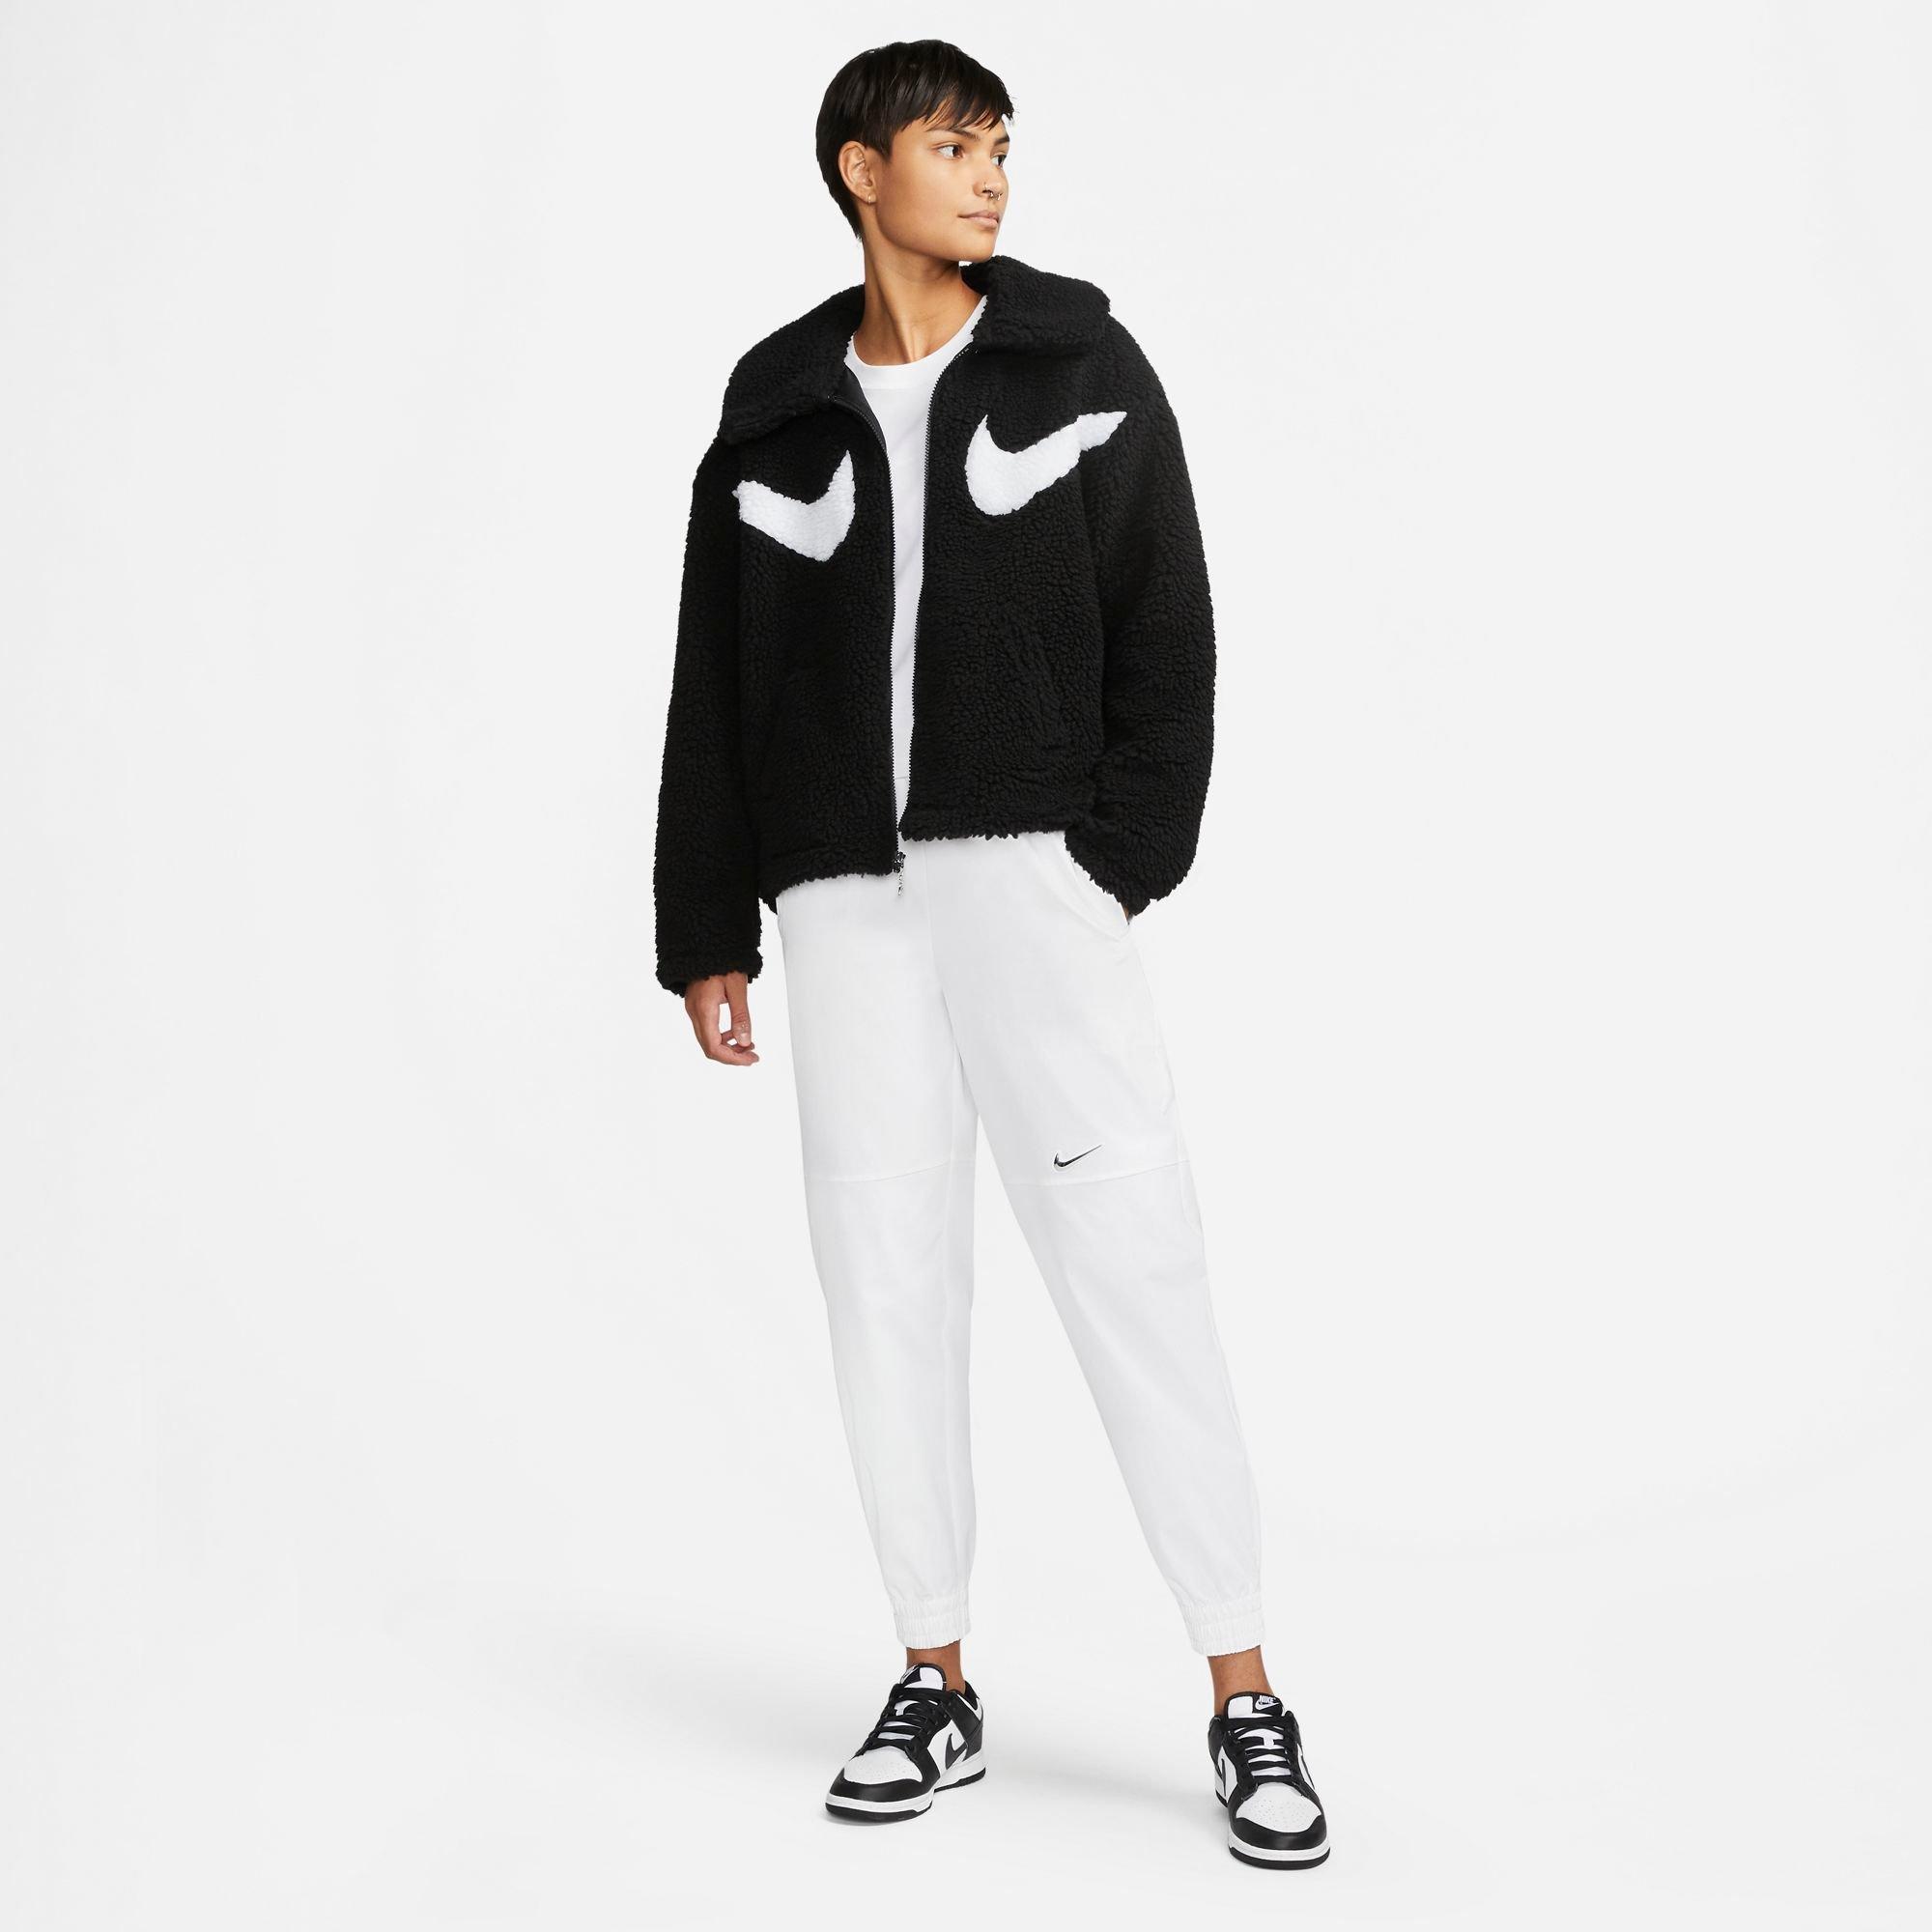 Luchten Fictief Productie Nike Women's Sportswear Swoosh Sherpa Full-Zip Jacket - Black/White